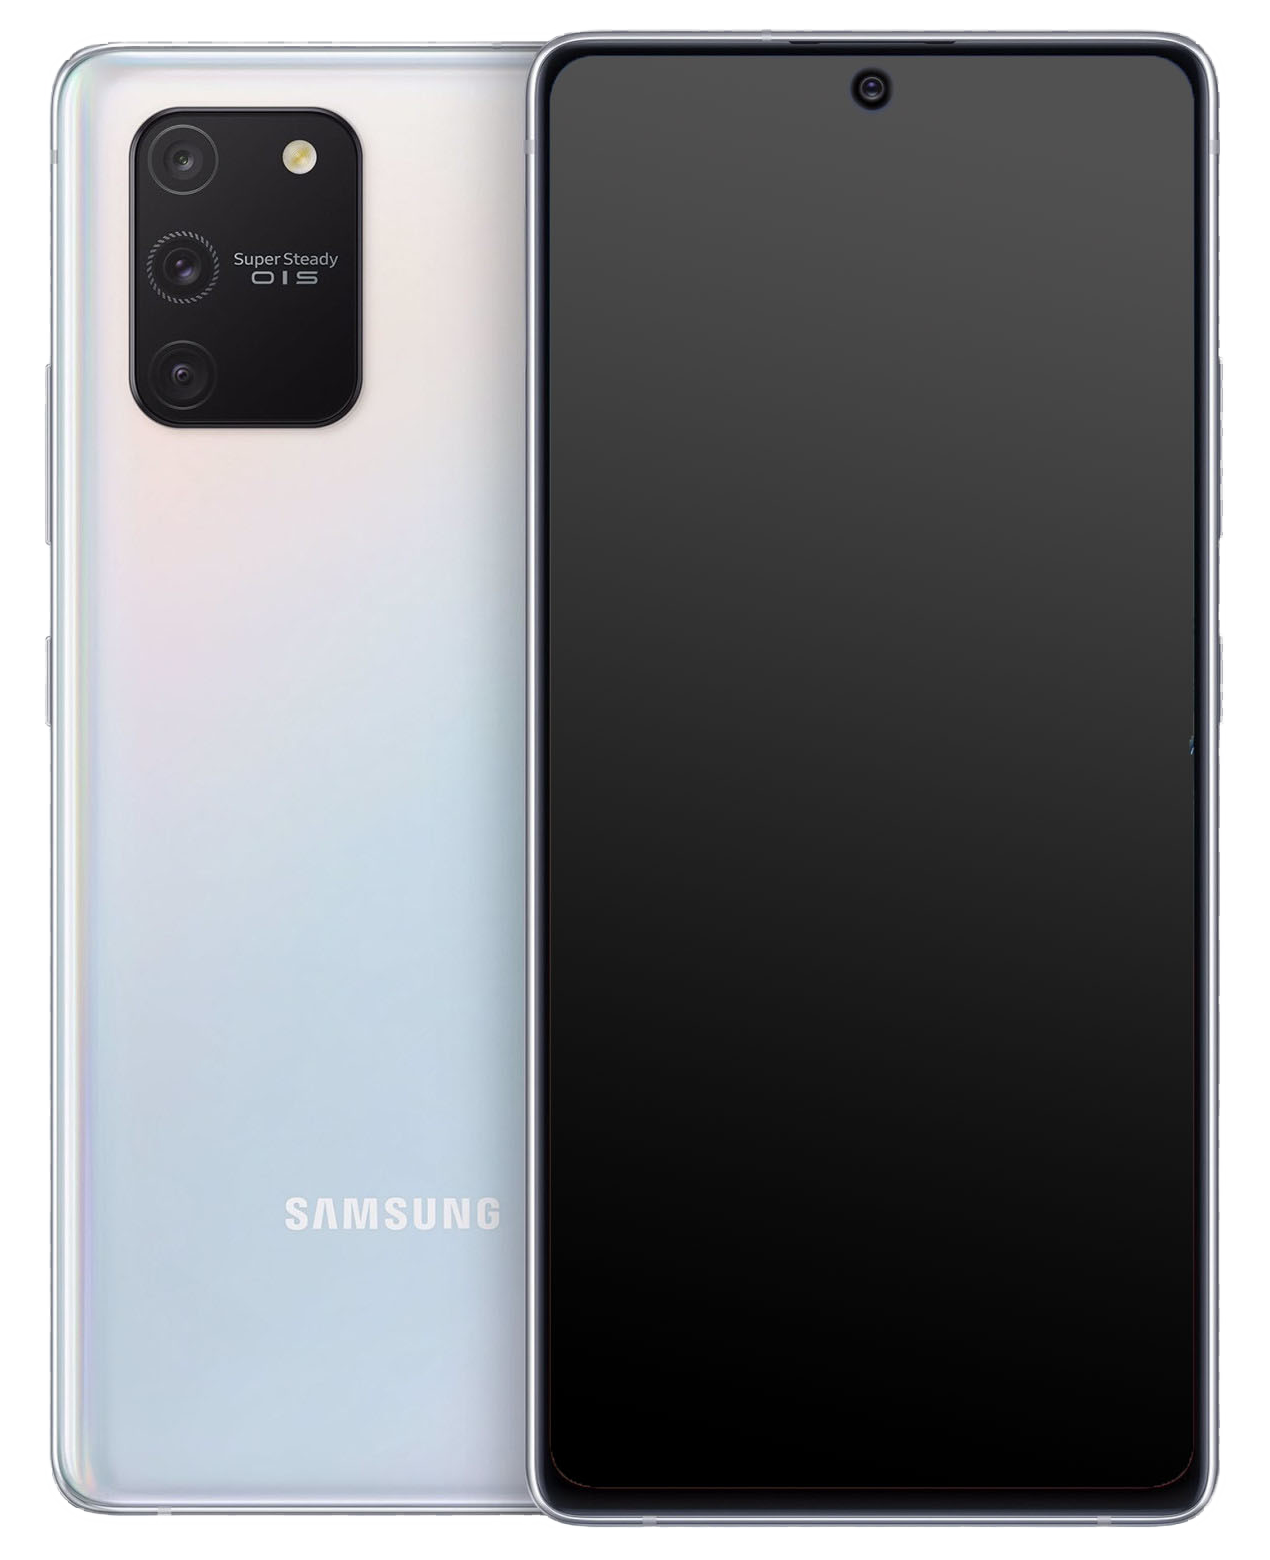 Samsung Galaxy S10 Lite Dual-SIM weiss - Ohne Vertrag